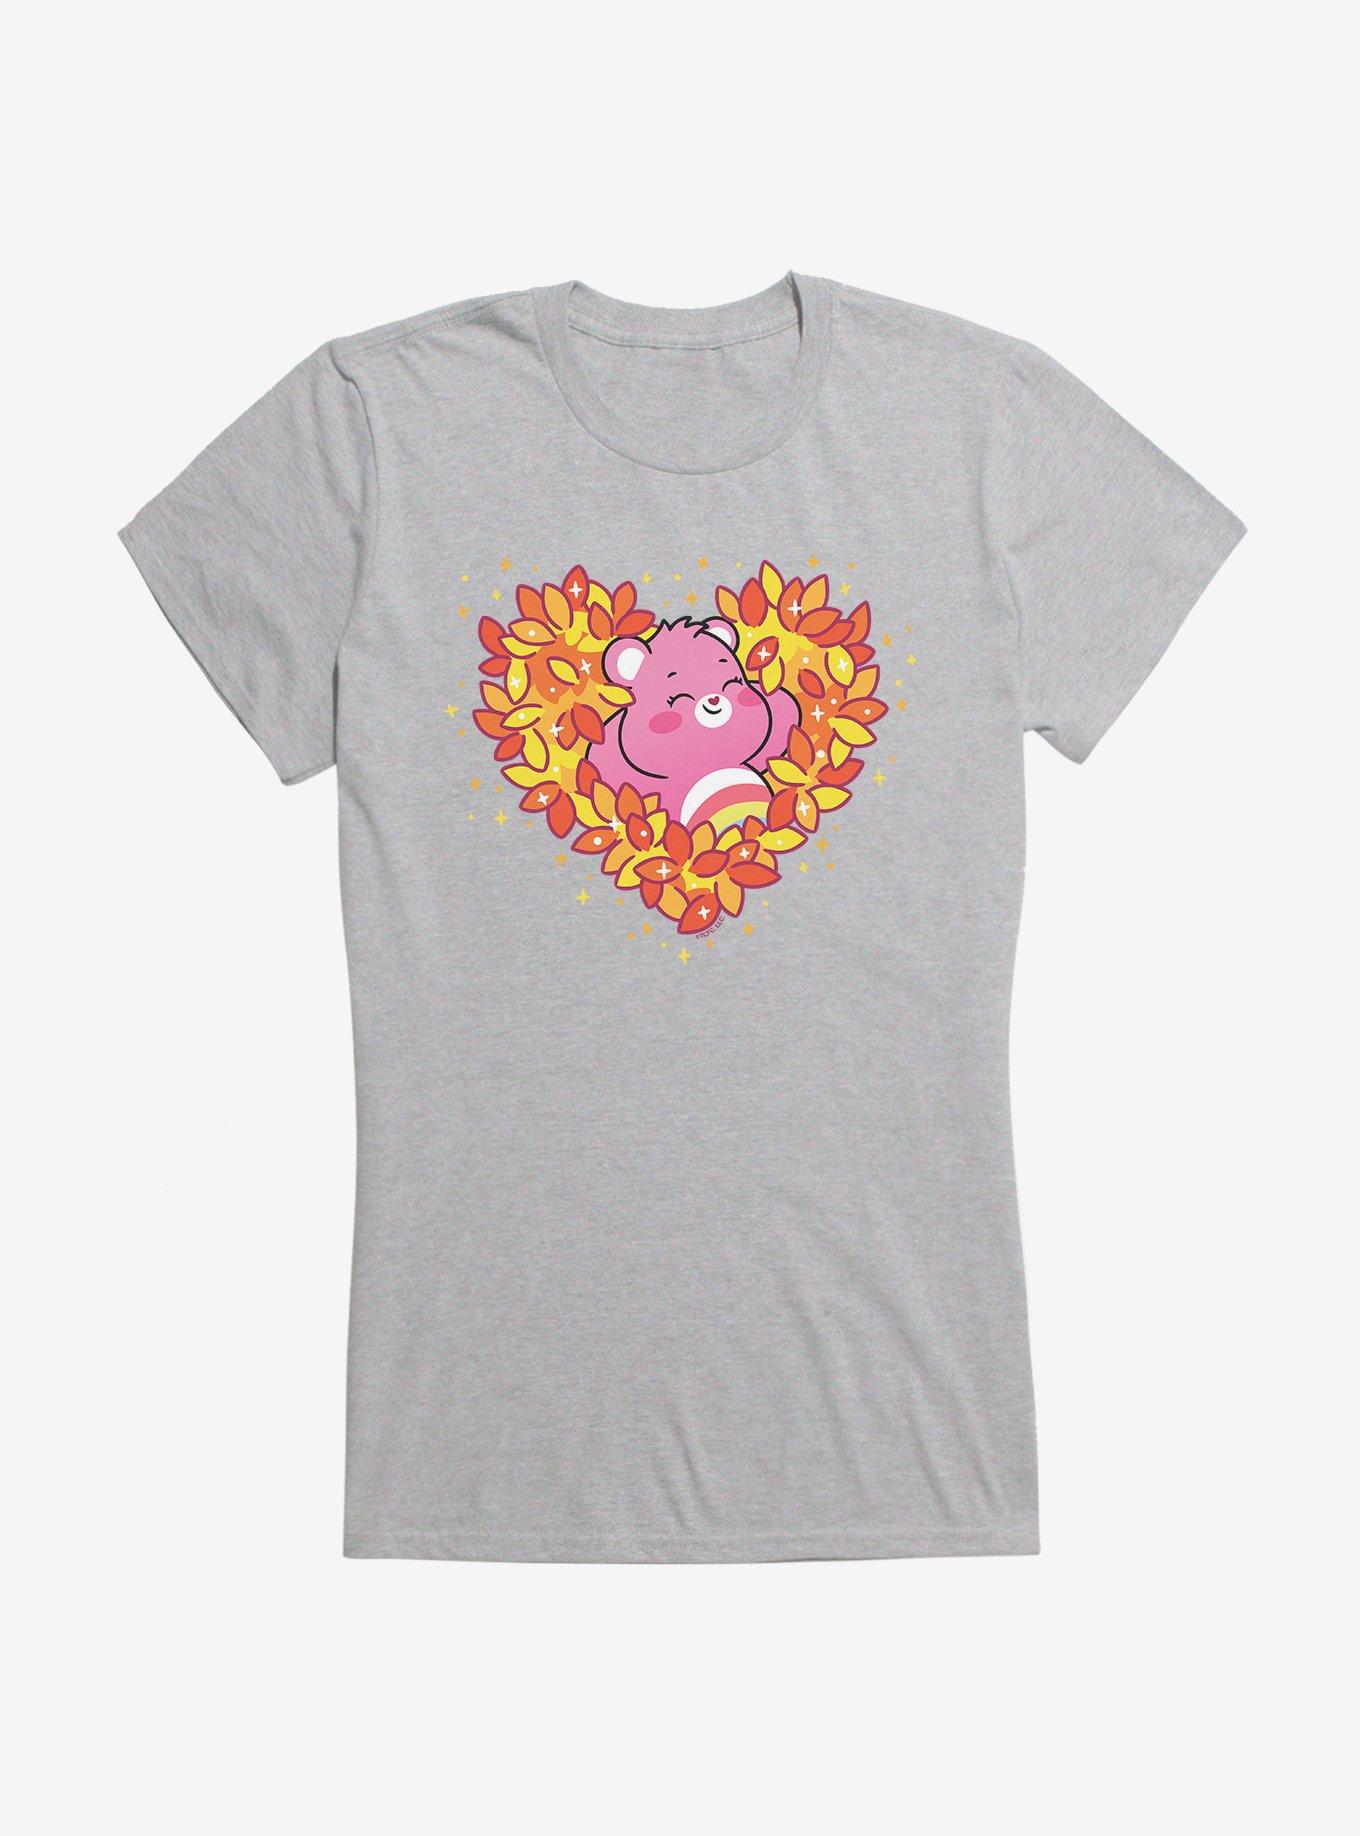 Care Bears Autumn Heart Girls T-Shirt